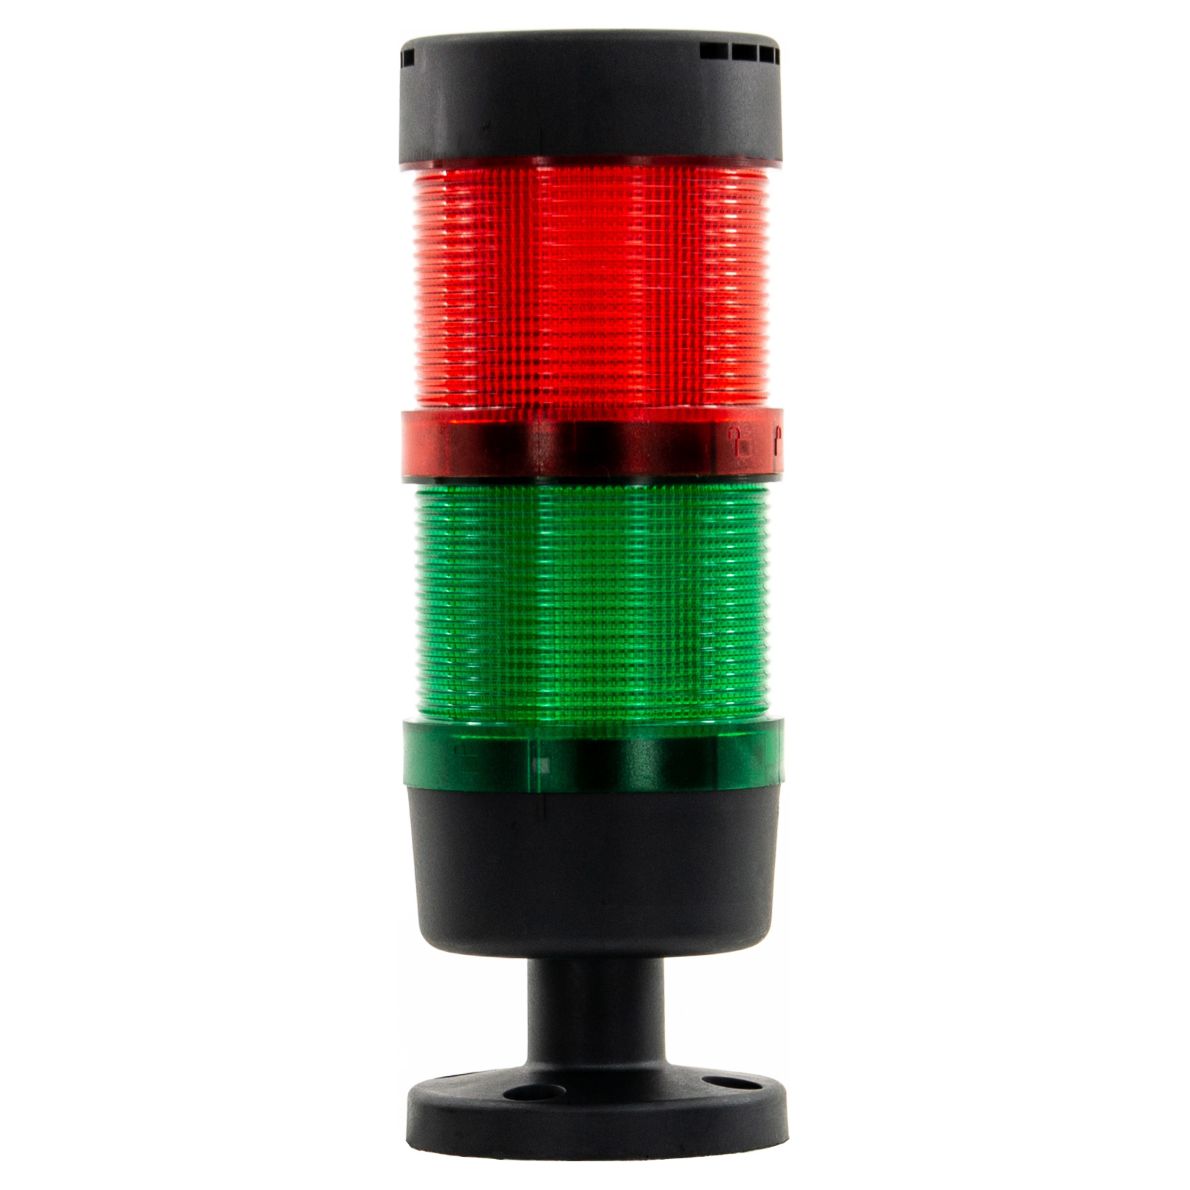 Dauerlicht Signalsäule, Alarmkombination mit 90-dB-Hupe + Signalleuchte, 24 V DC - Grün-Rot